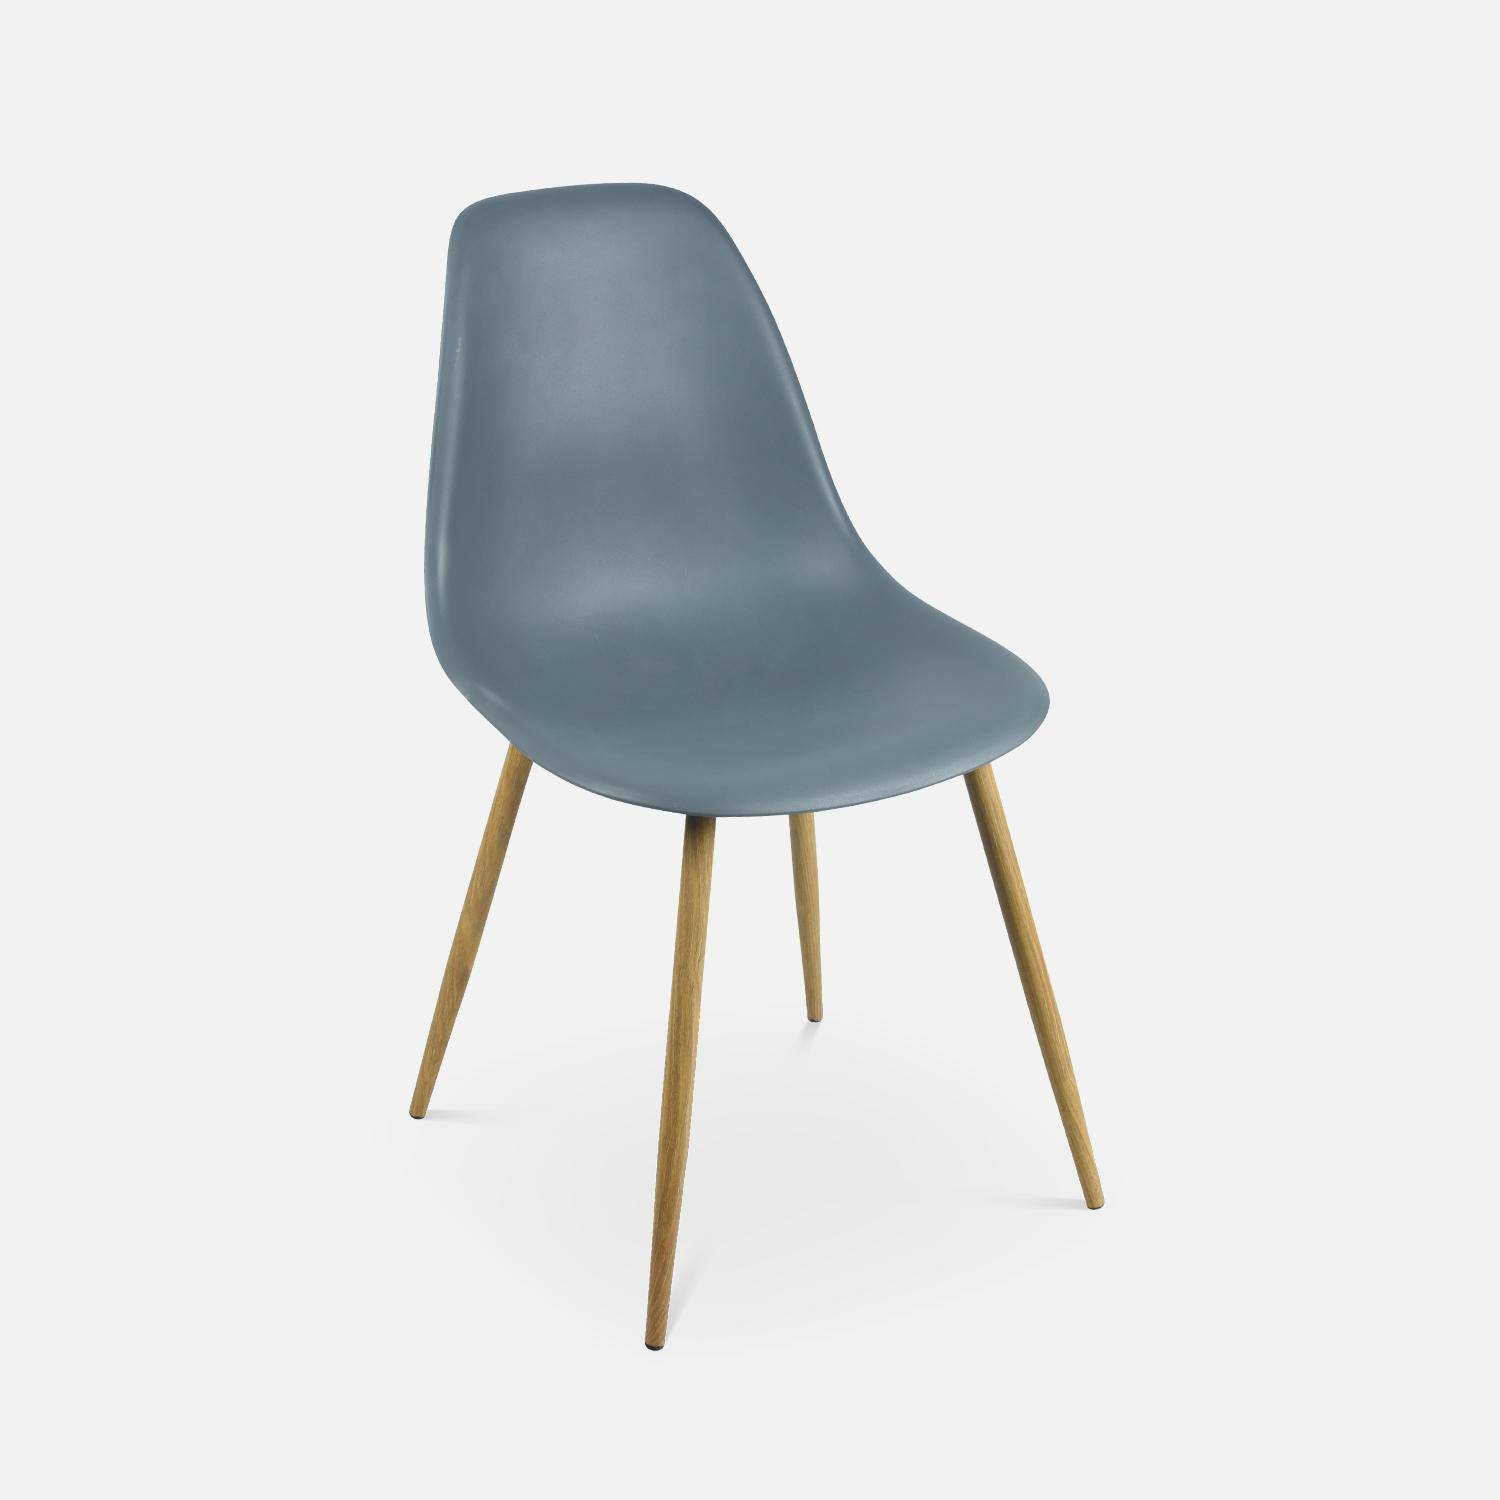 Juego de 4 sillas escandinavas - Lars - patas de metal color madera, sillas de una plaza, color gris Photo5